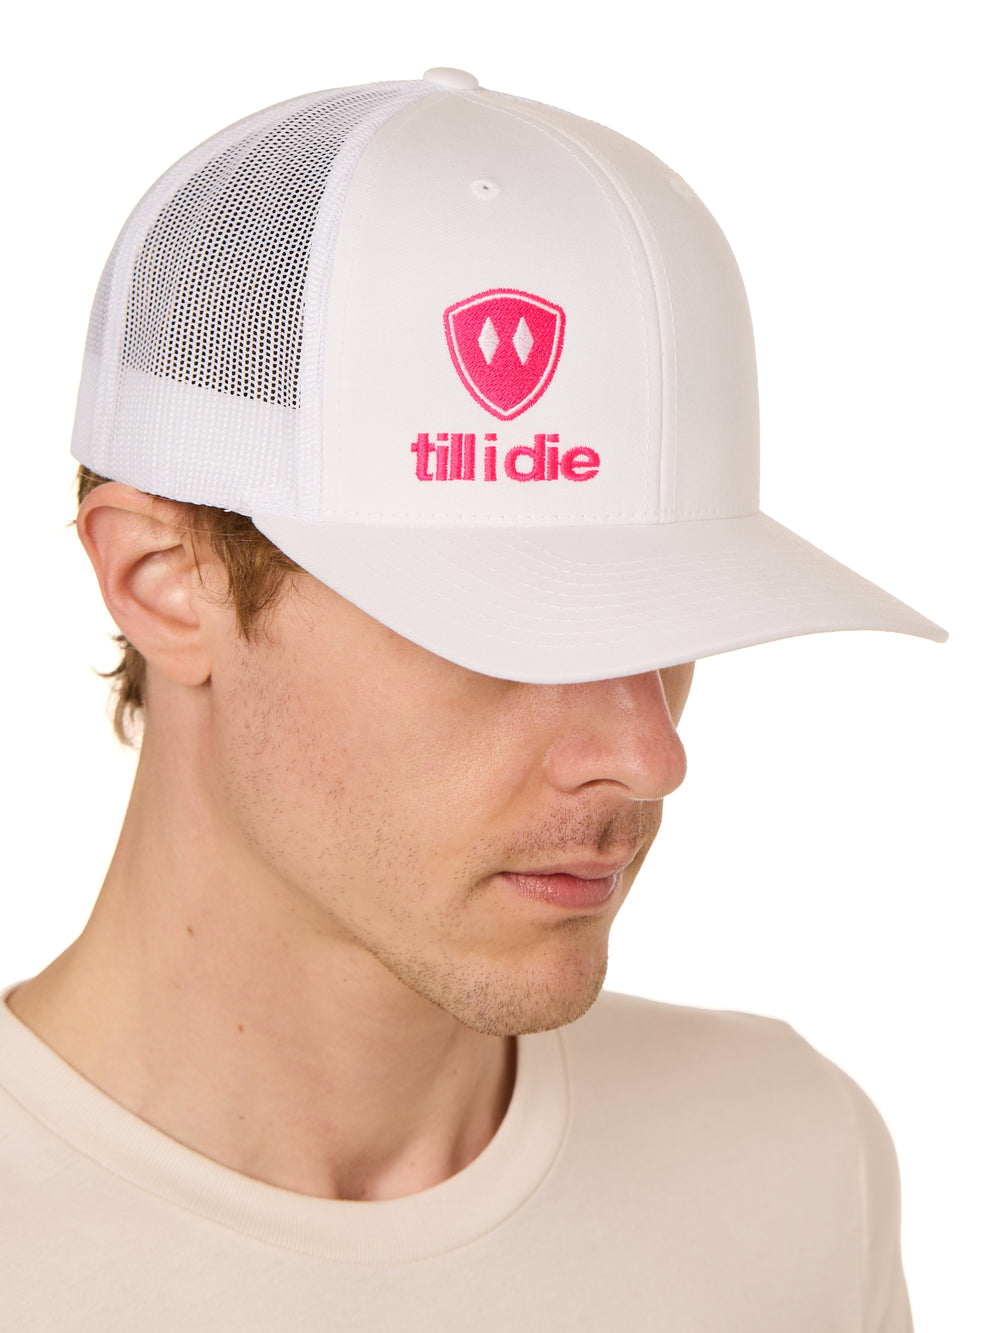 Till I Die Logo // Classic Trucker Hat // White + Pink